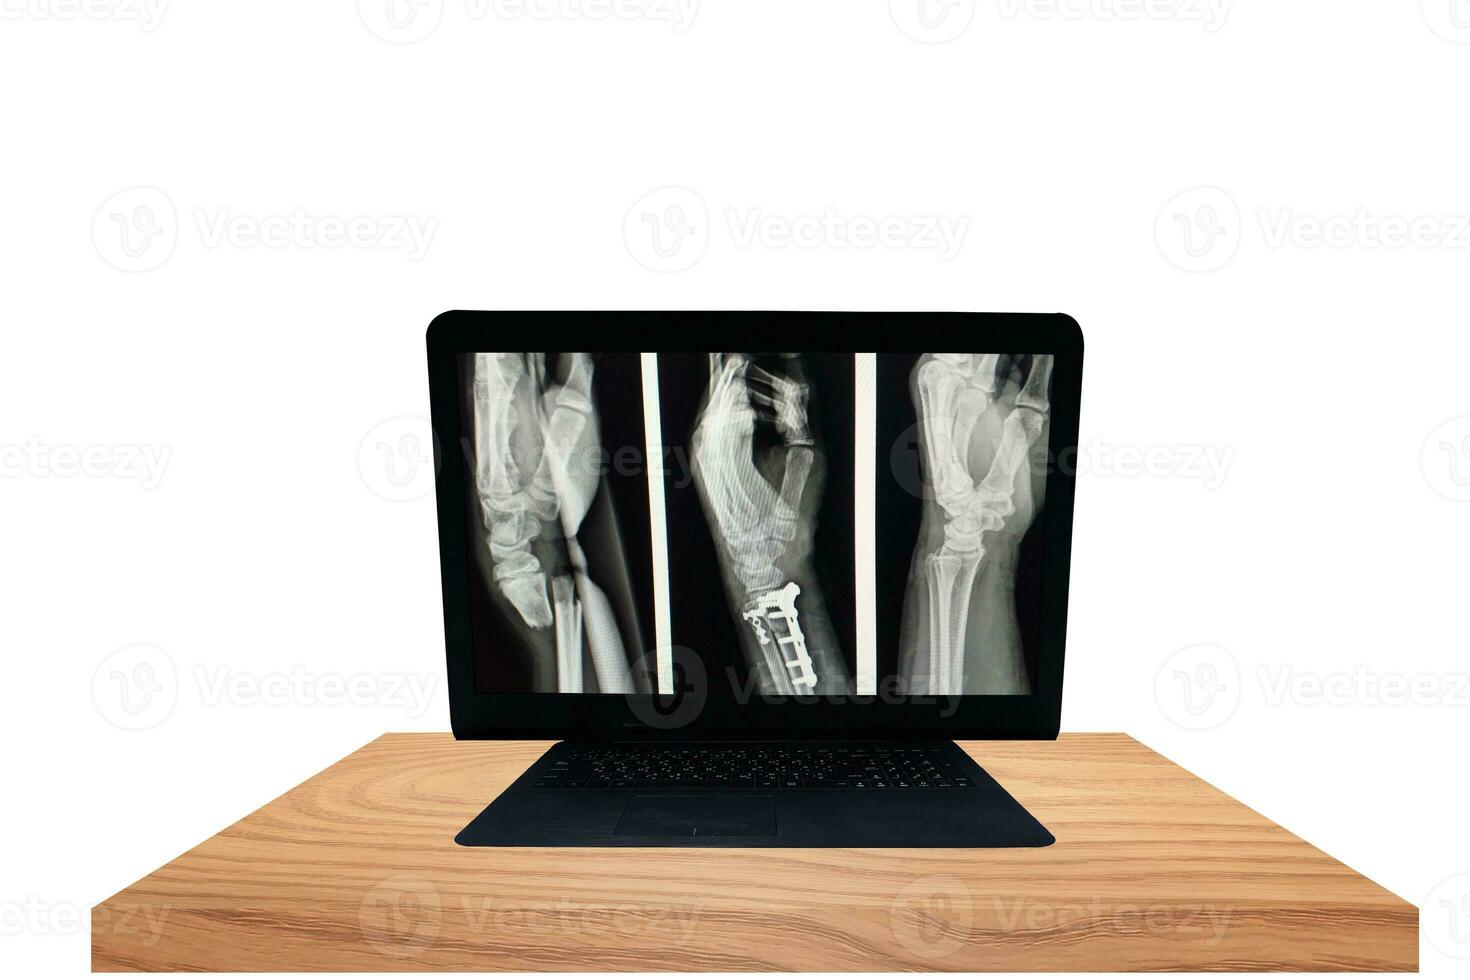 radiographie la gauche poignet fracture distal métaphyse de tous les deux des os avant-bras.dorsol déplacement de distal fragments.sévère gonflement de doux tissus.médical image concept. photo